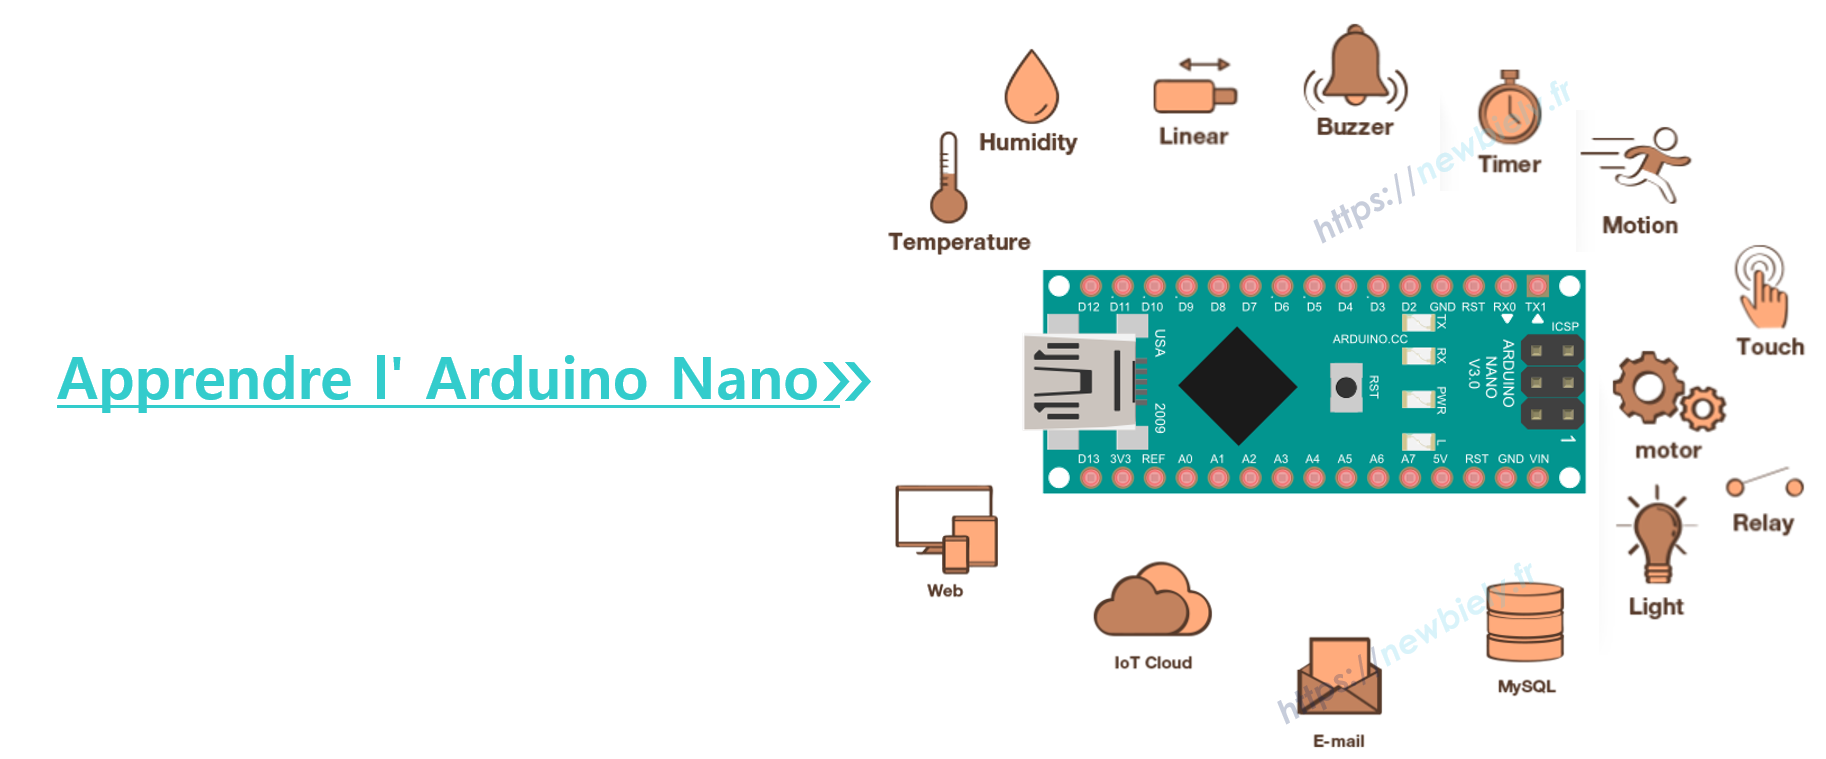 Apprendre l'Arduino Nano